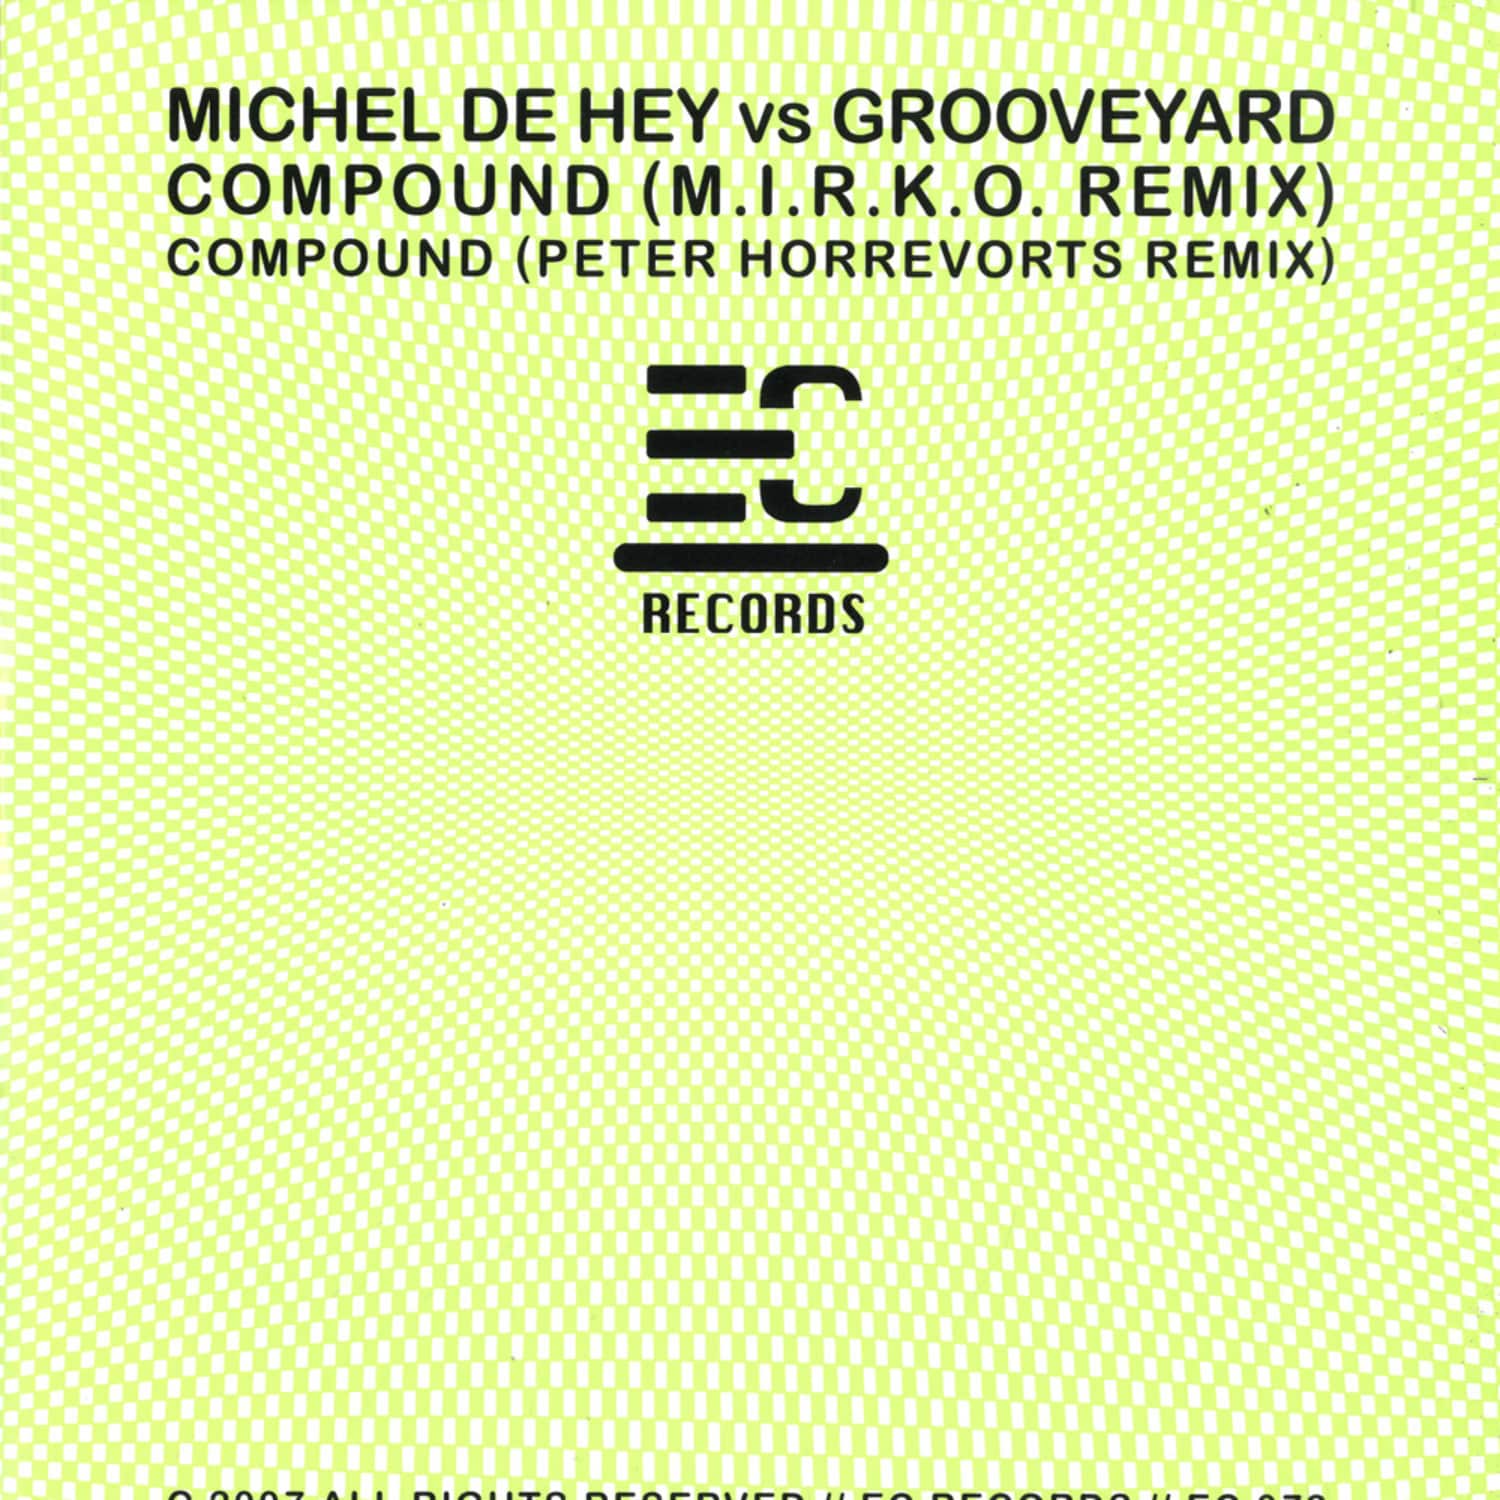 Michel Dehey vs Grooveyard - COMPOUND M.I.R.K.O. RMX